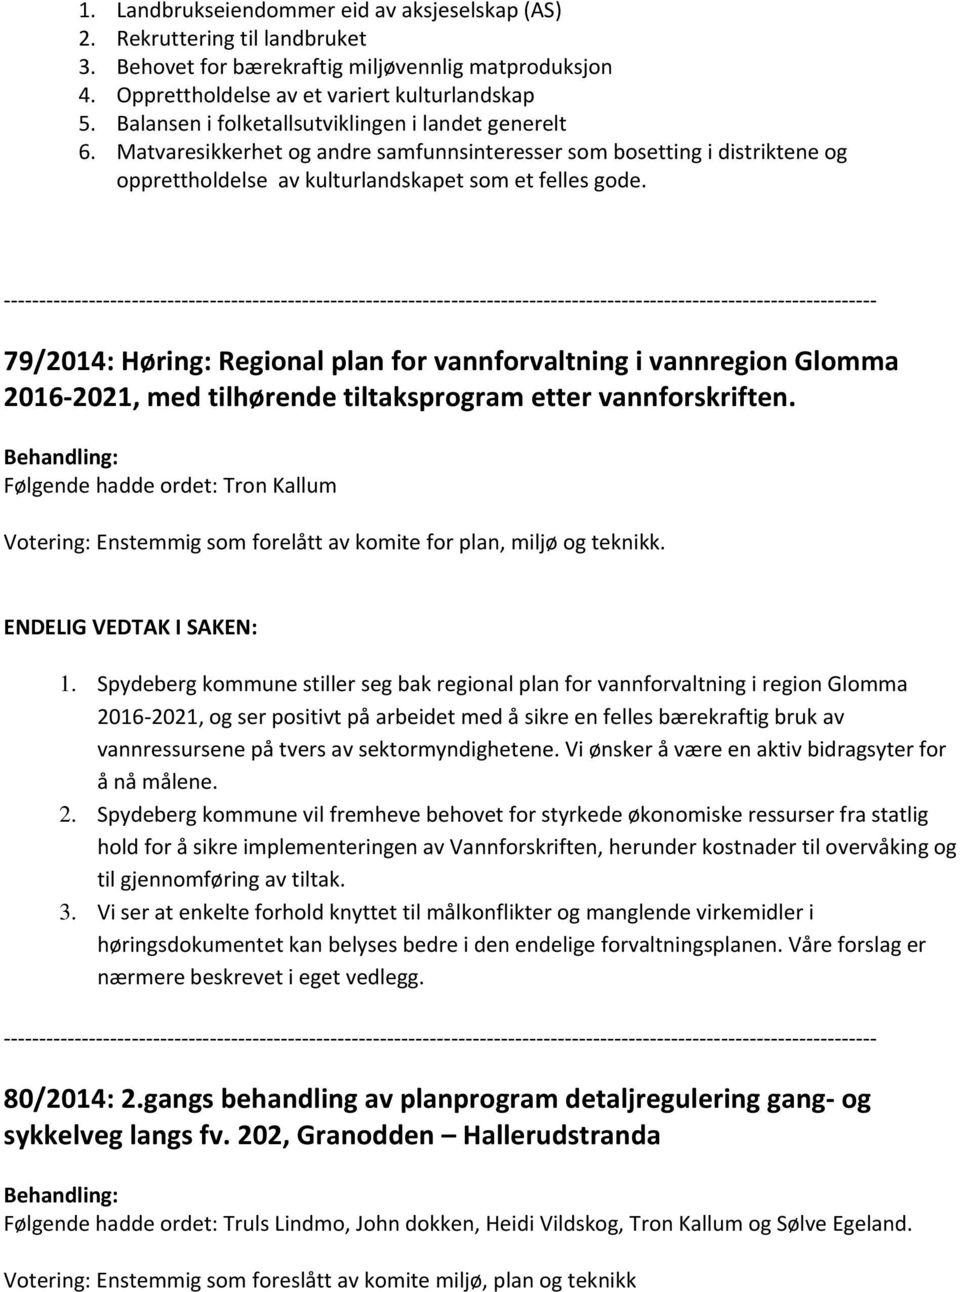 79/2014: Høring: Regional plan for vannforvaltning i vannregion Glomma 2016 2021, med tilhørende tiltaksprogram etter vannforskriften.